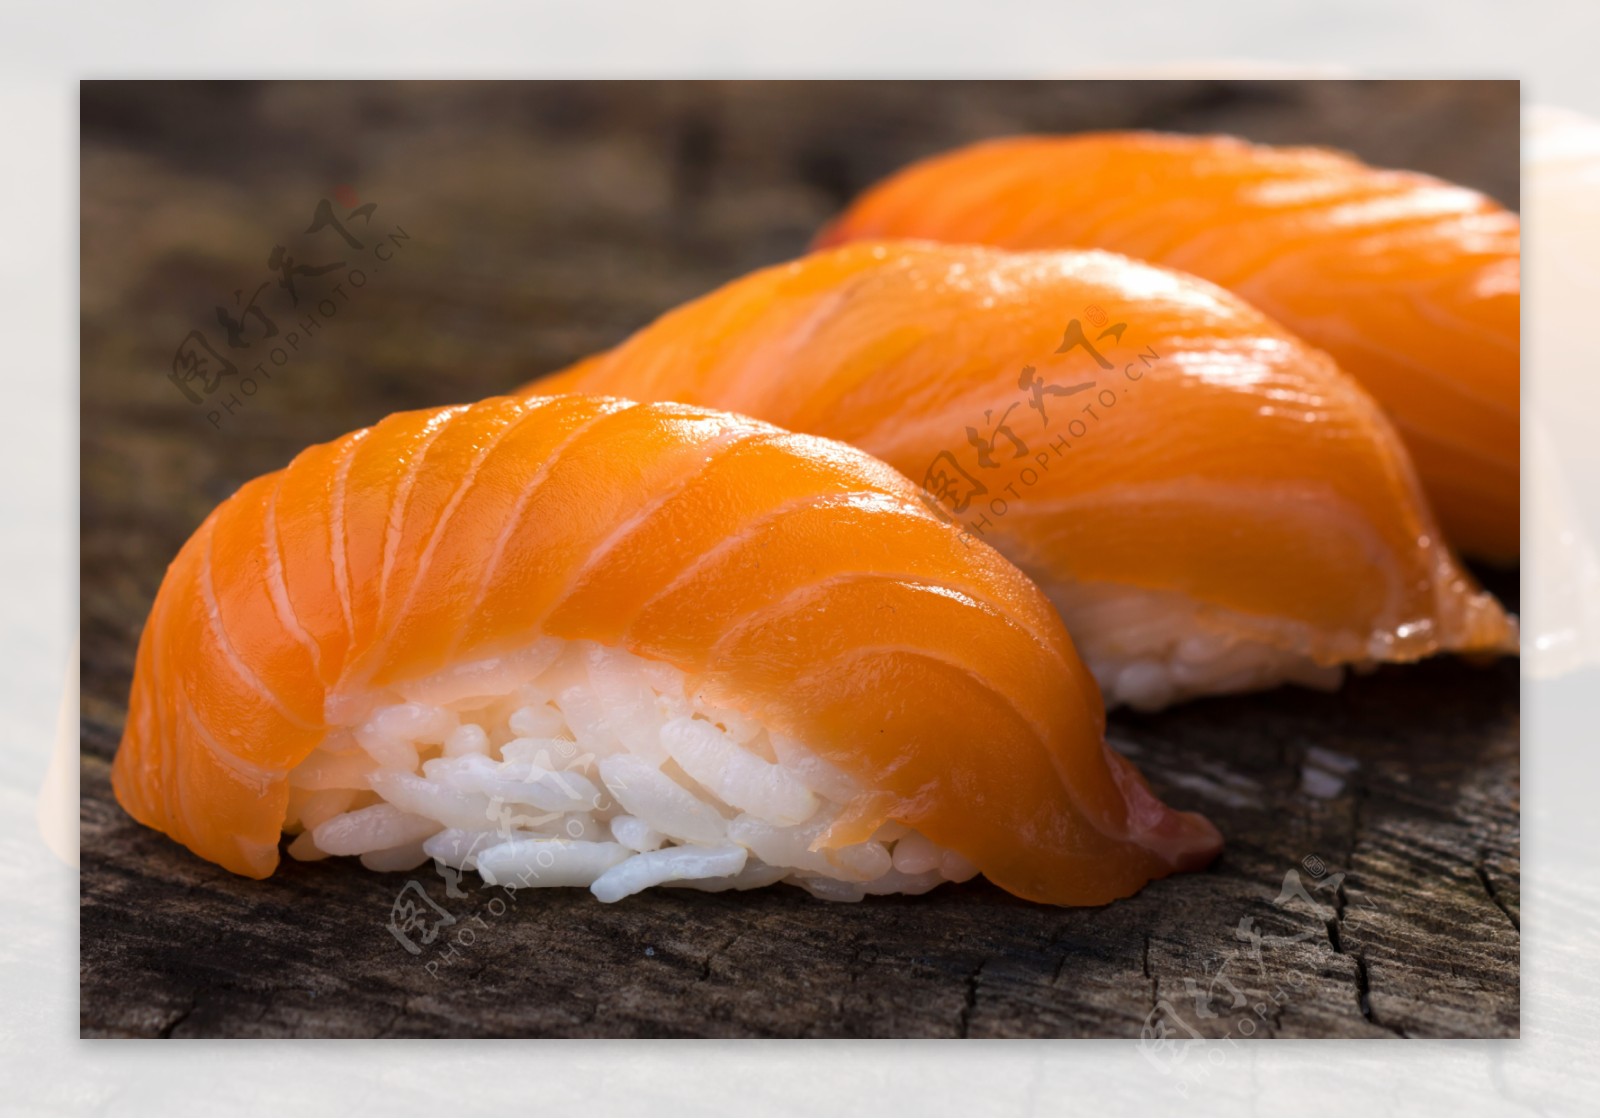 美味三文鱼寿司图片